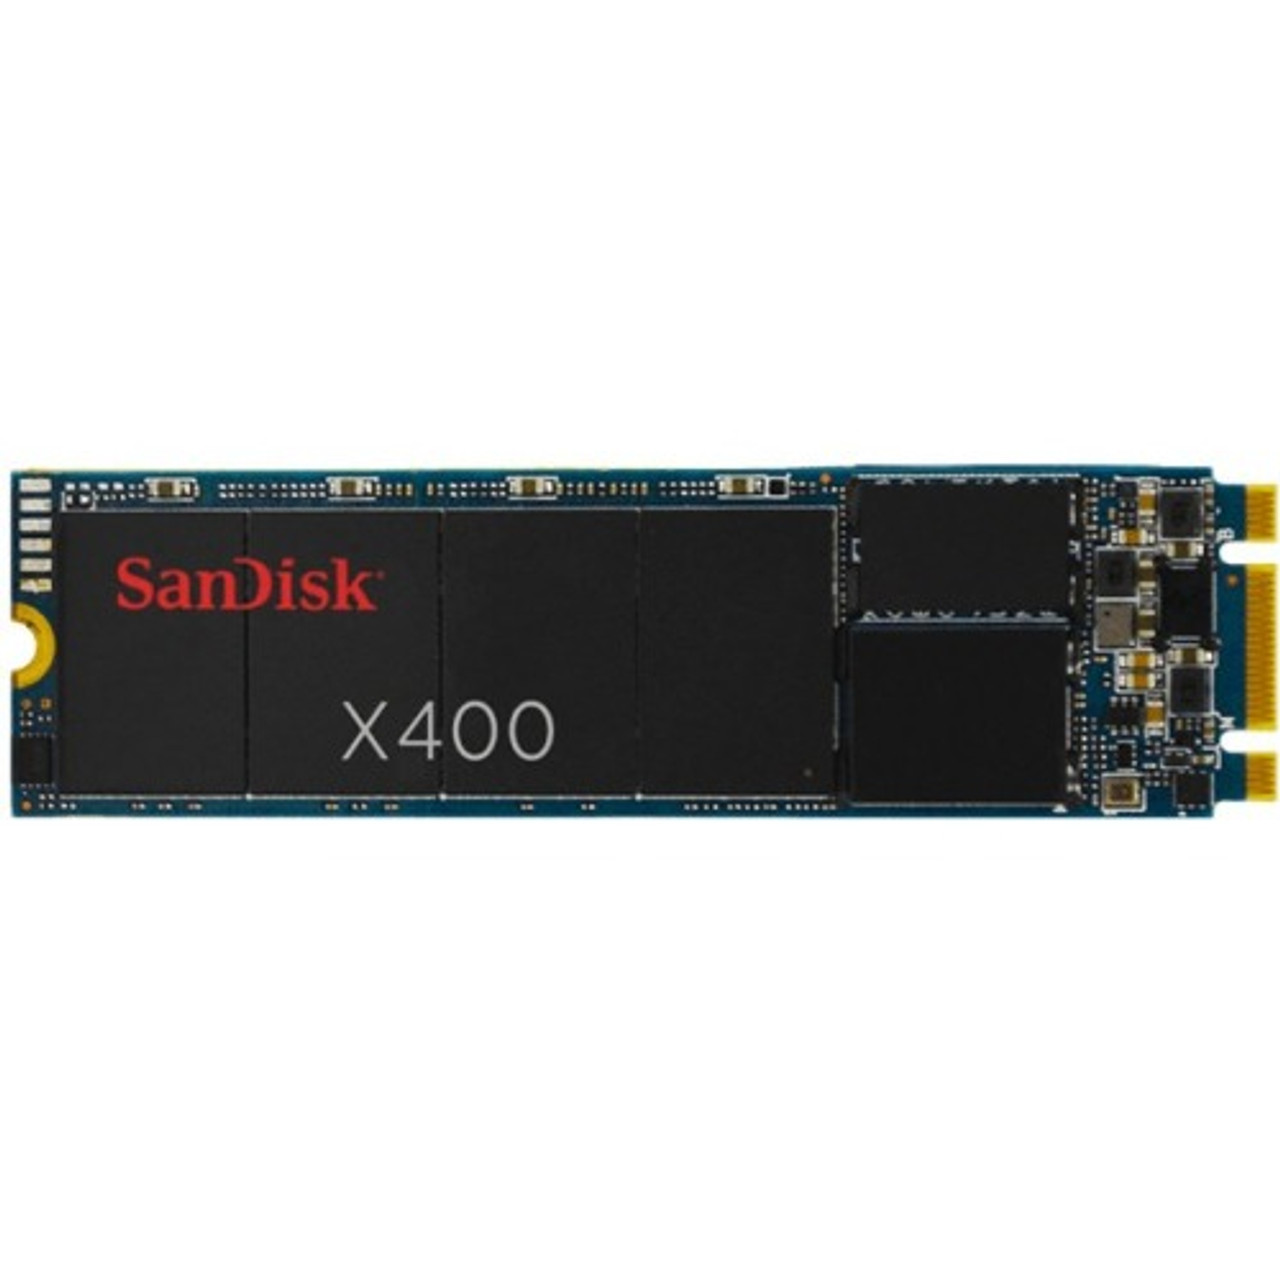 SanDisk X400 512GB Solid State Drive SATA (SATA/600) Internal M.2 2280 540 MB/s Maximum Read Transfer Rate 520 MB/s Maximum Write Transfer Rate 256-bit Encryption Standard Mfr P/N SD8SN8U-512G-2000